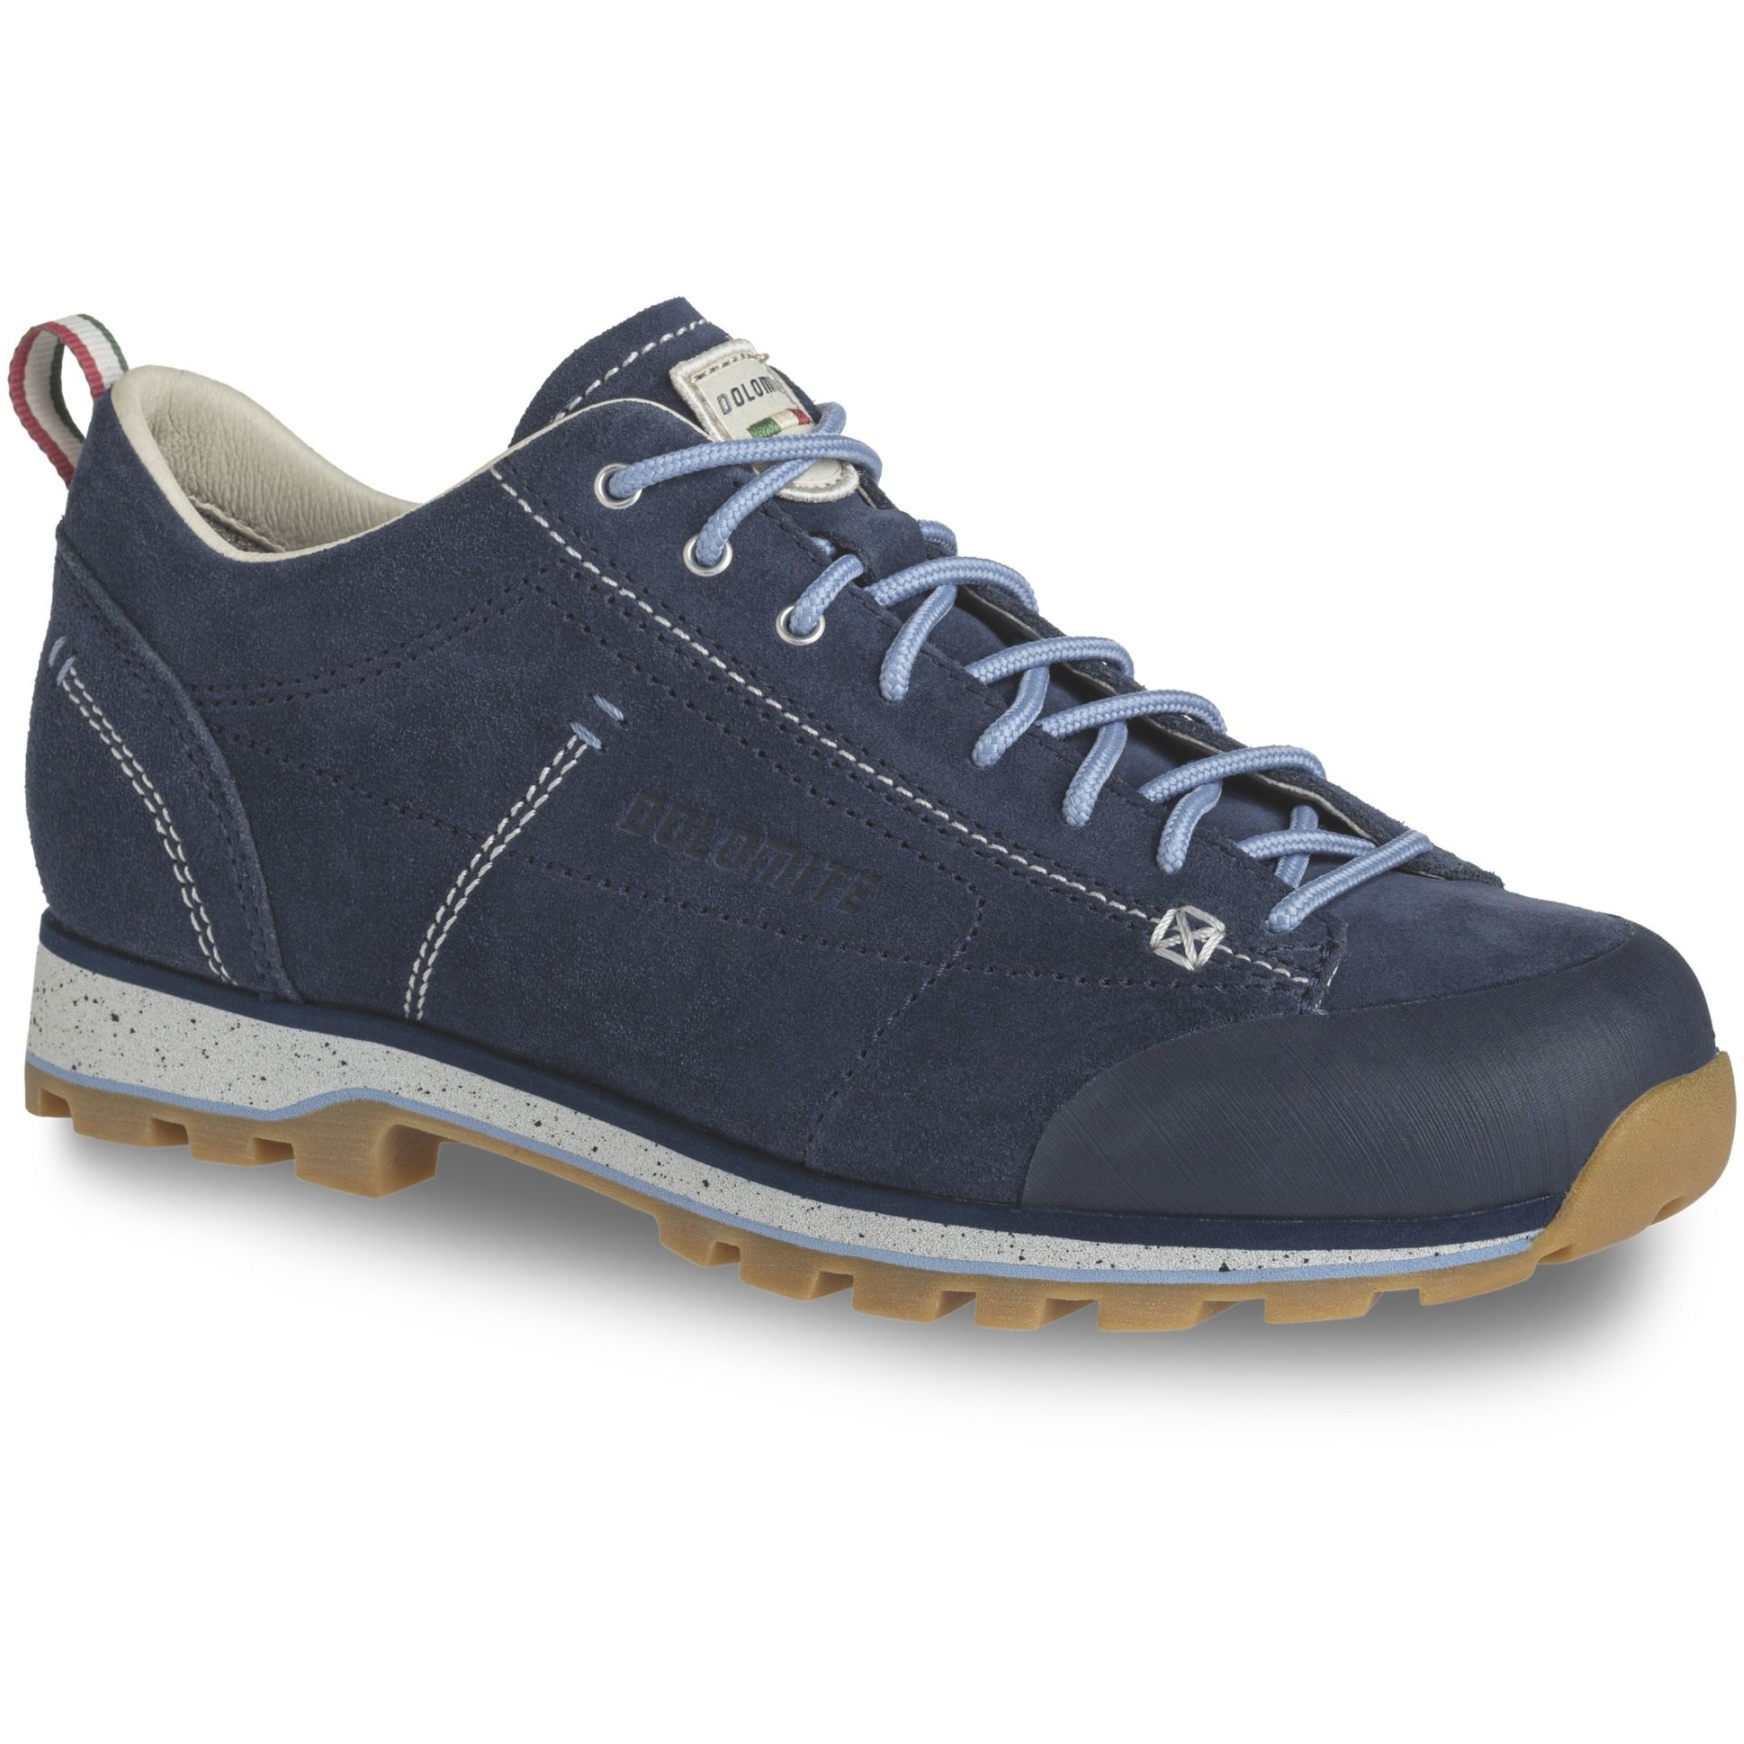 Productfoto van Dolomite 54 Low Evo Schoenen Dames - blauw